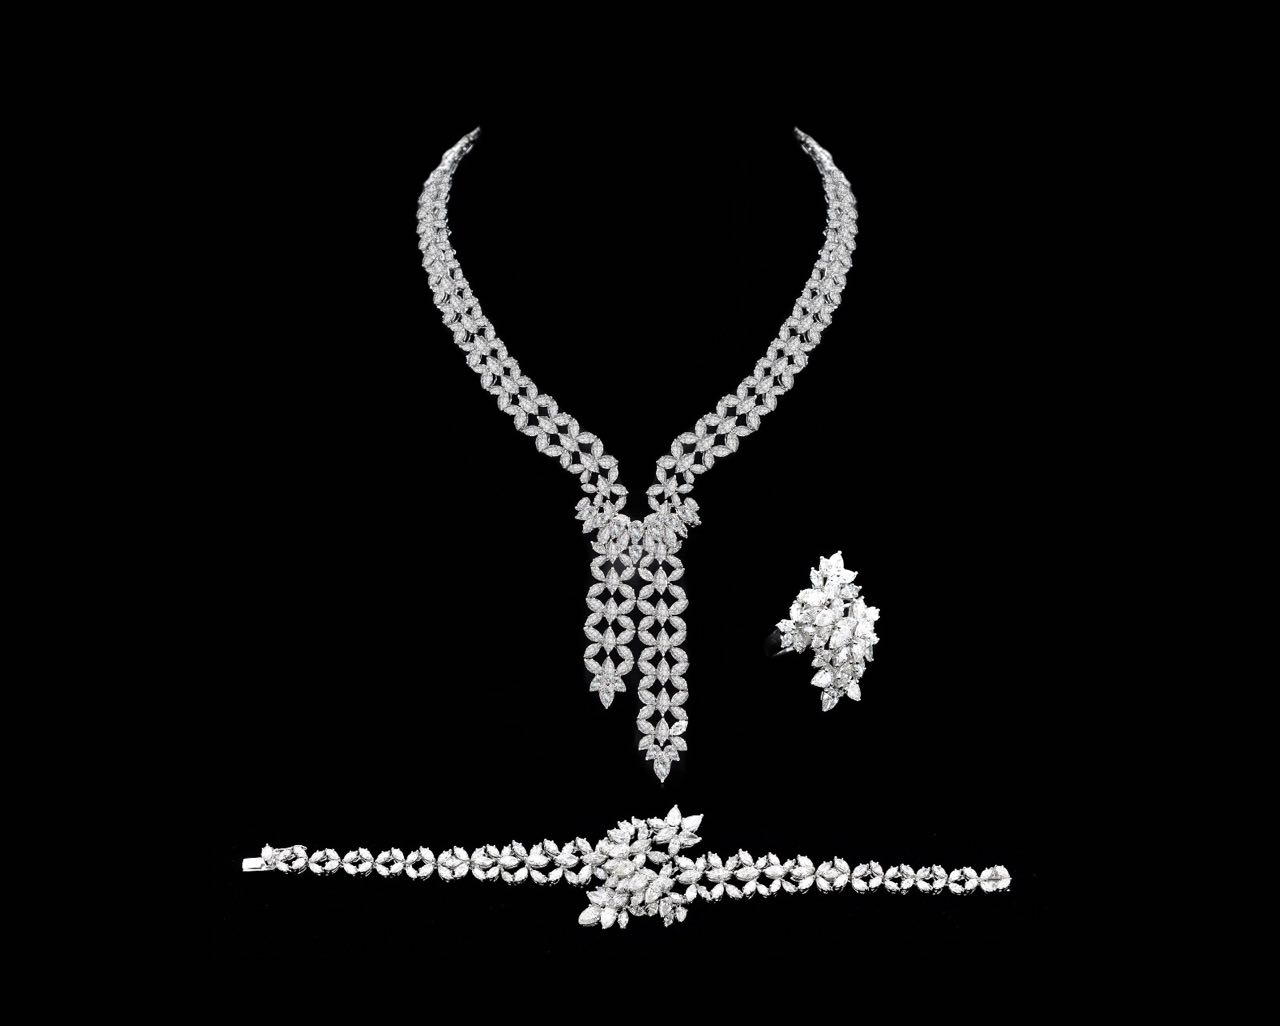 Diamond necklace, bracelet and ring set